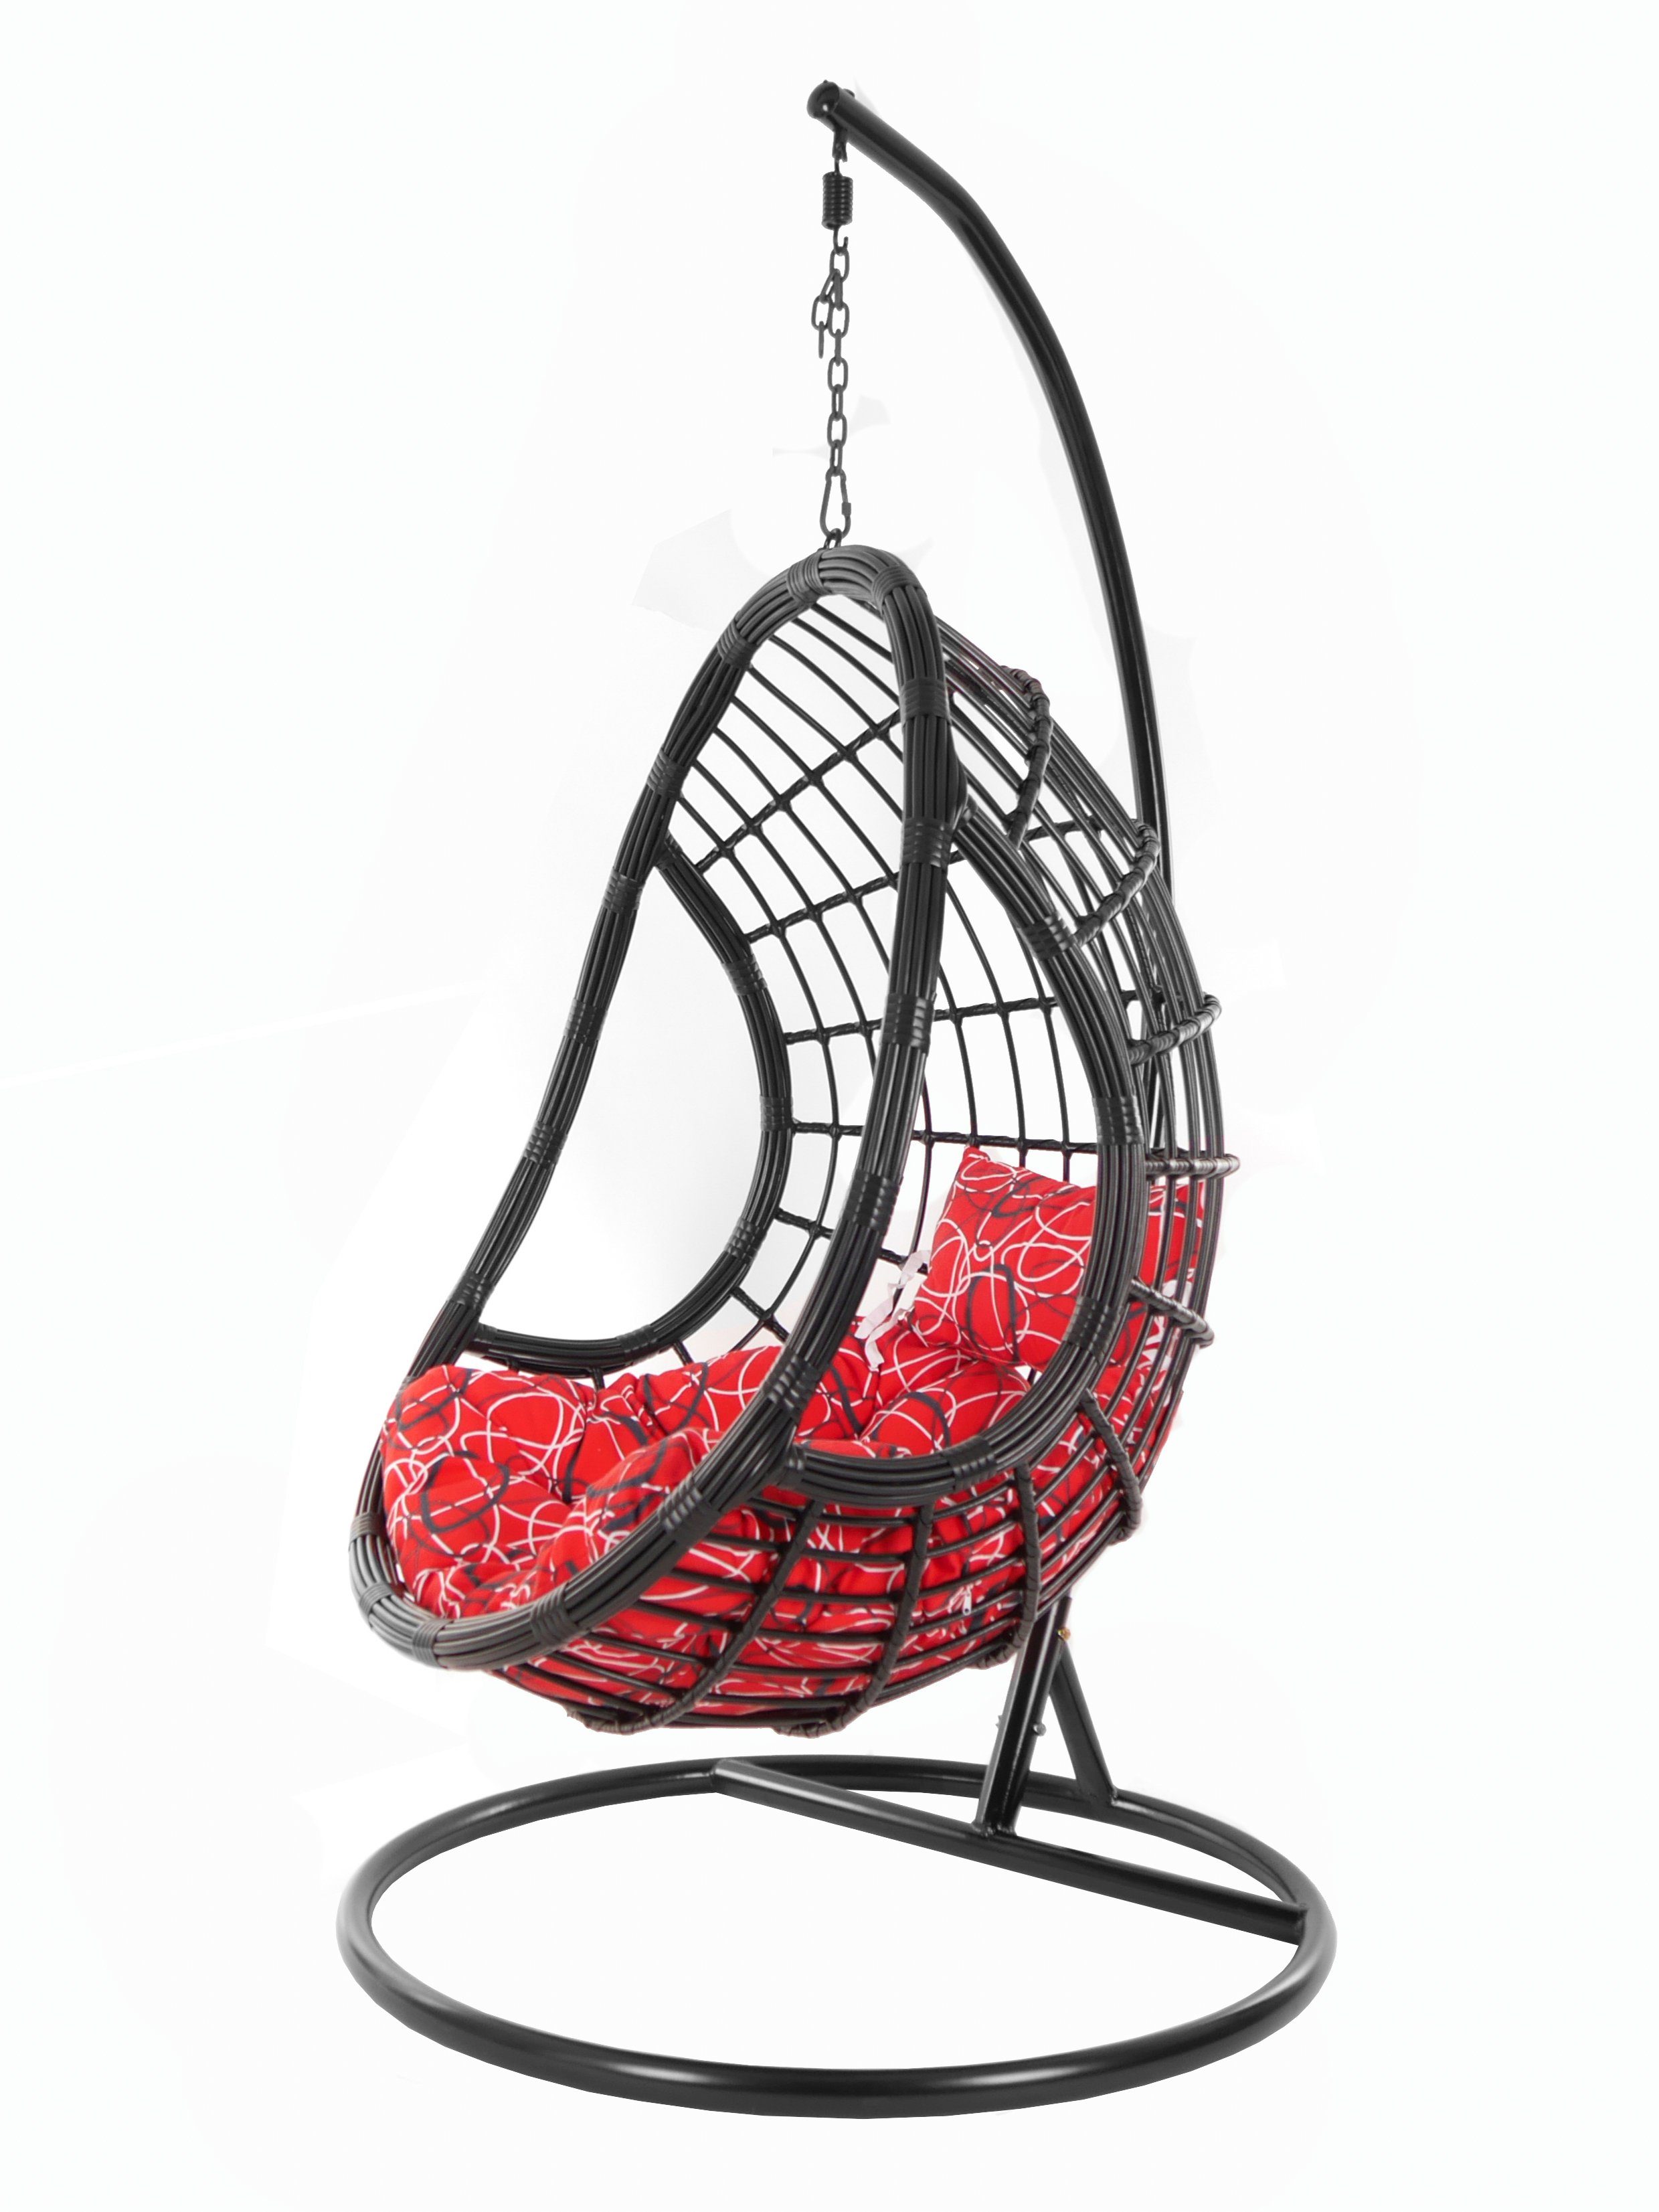 KIDEO Hängesessel PALMANOVA black, Swing Chair, schwarz, Loungemöbel, Hängesessel mit Gestell und Kissen, Schwebesessel, edles Design rot gemustert (3088 red frizzy)